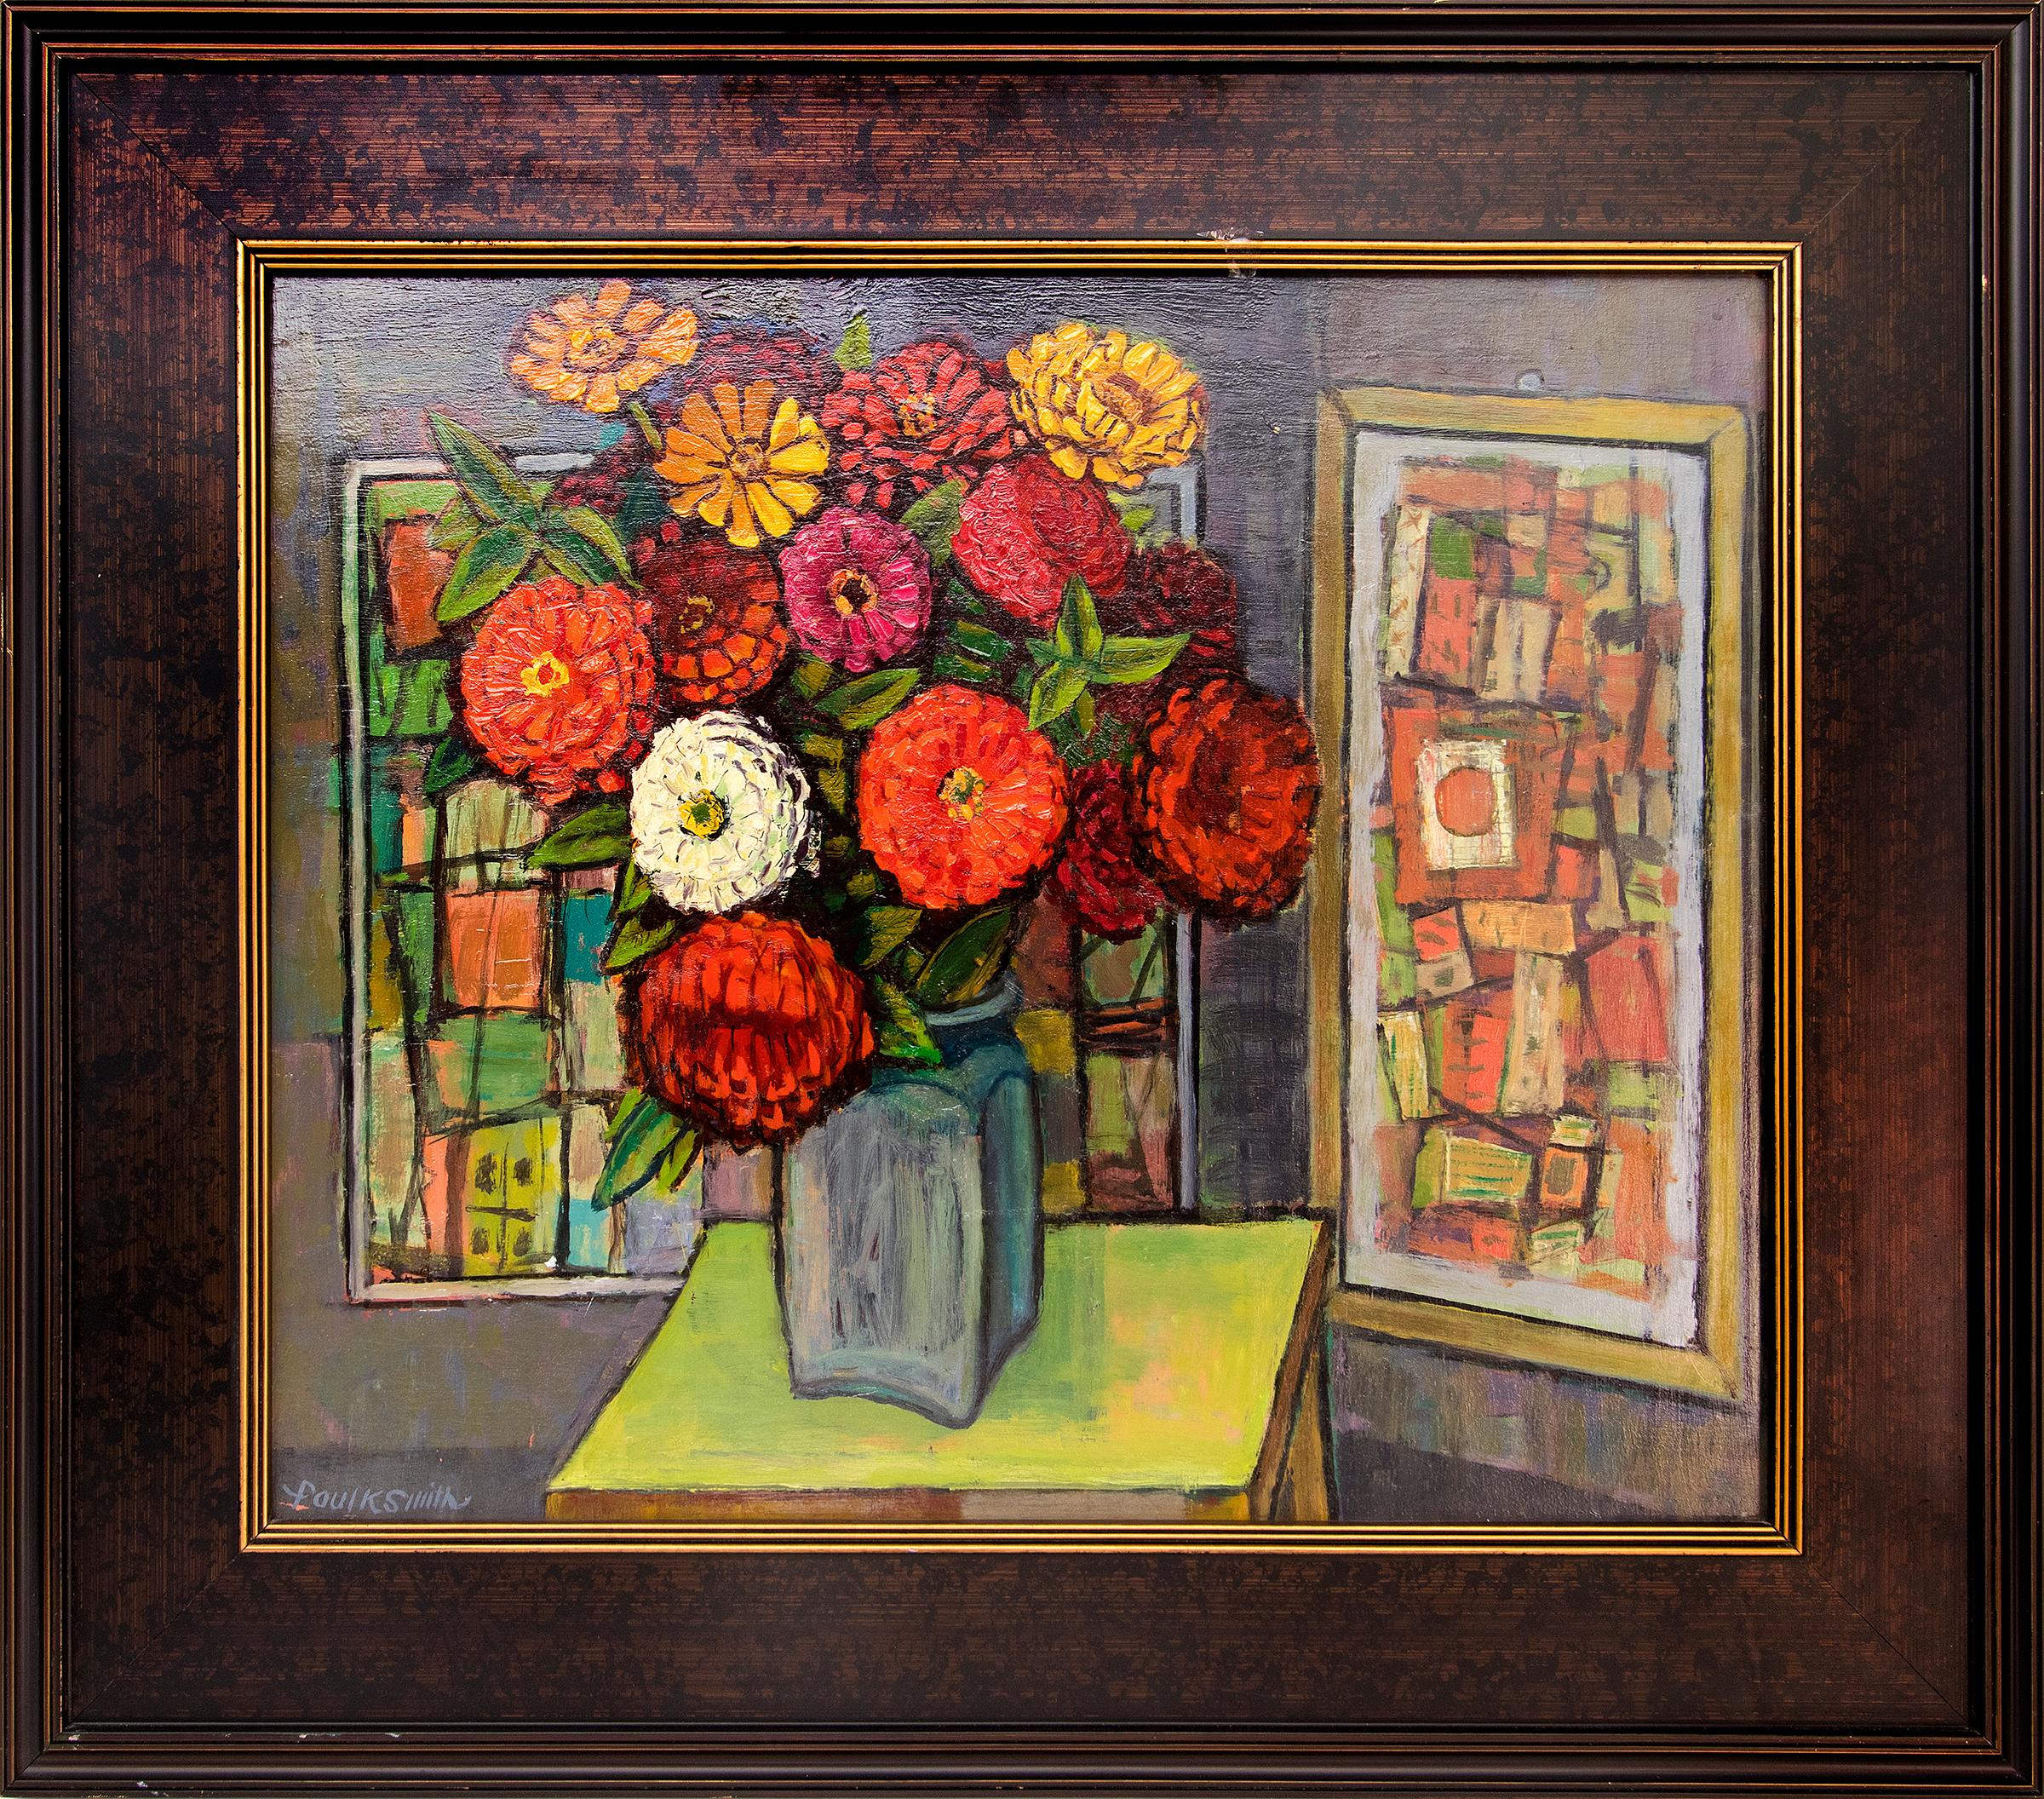 Abstract Painting Paul K Smith - Nature morte abstraite moderniste américaine avec fleurs de zincine, rouge et orange